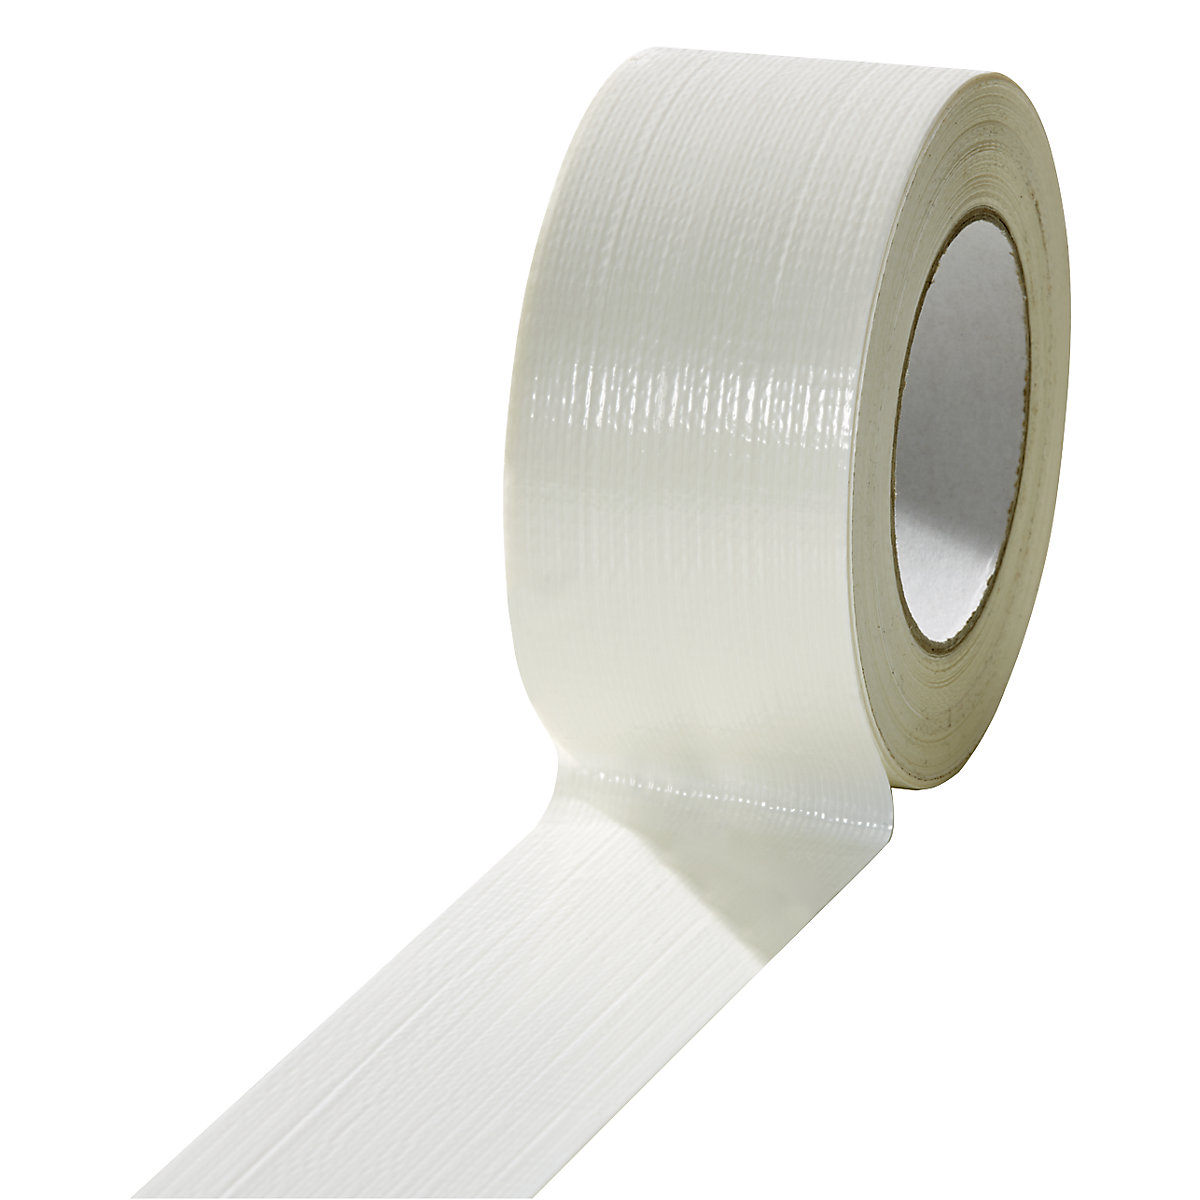 Traka od tkanine, u različitim bojama, pak. 18 rola, u bijeloj boji, širina trake 50 mm